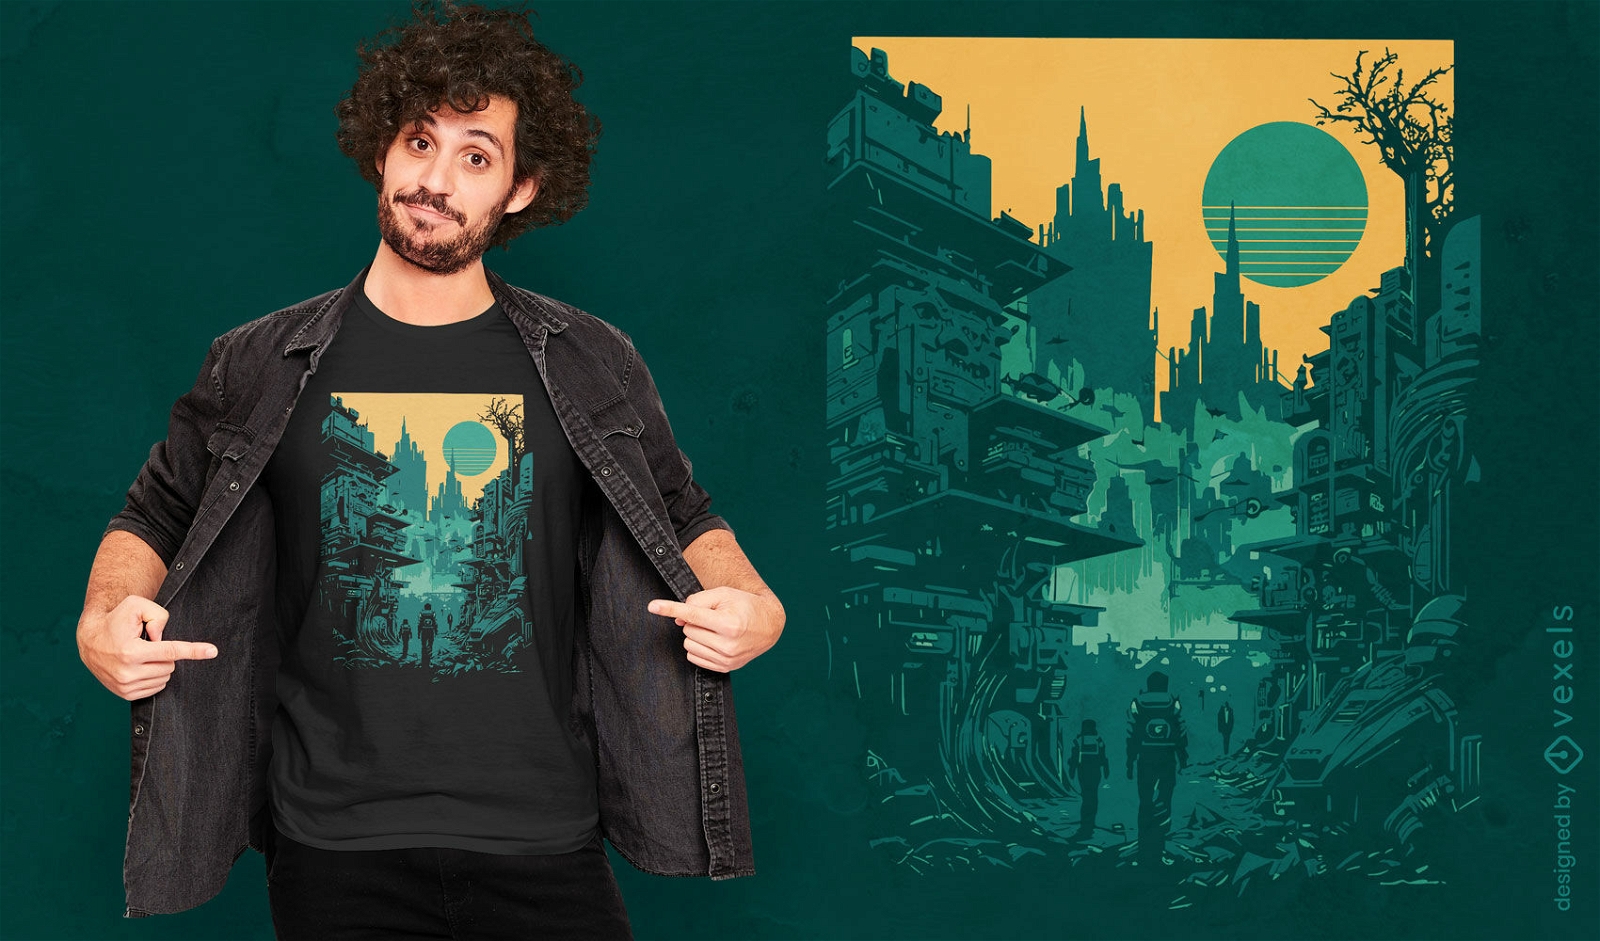 Futuristisches Stadt-T-Shirt-Design